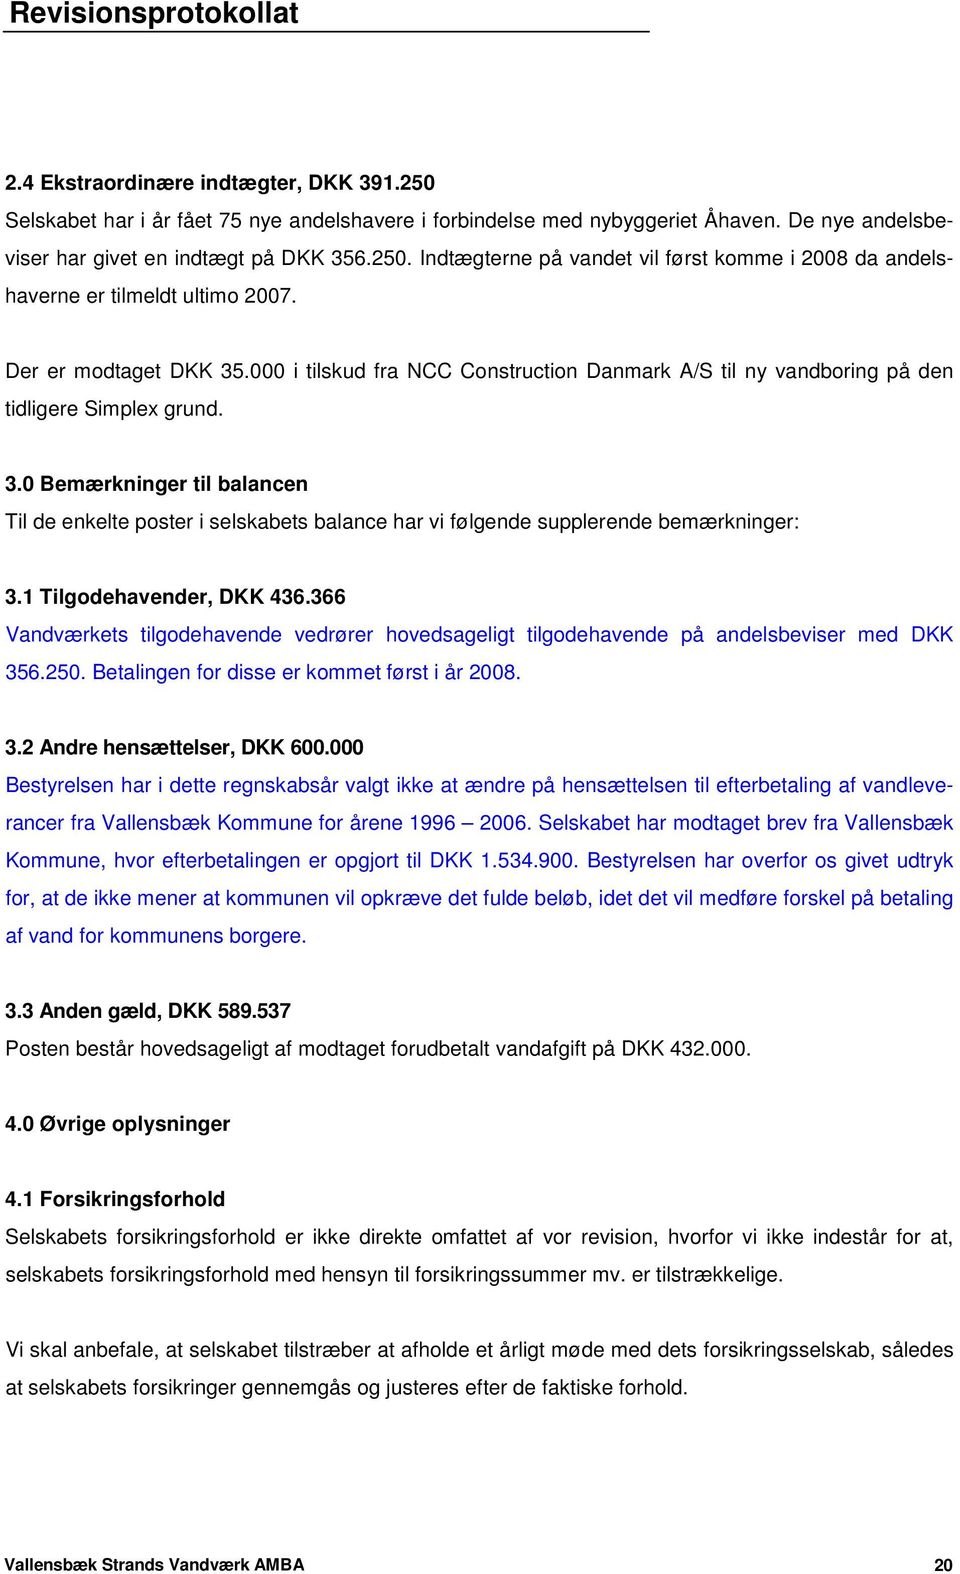 1 Tilgodehavender, DKK 436.366 Vandværkets tilgodehavende vedrører hovedsageligt tilgodehavende på andelsbeviser med DKK 356.250. Betalingen for disse er kommet først i år 2008. 3.2 Andre hensættelser, DKK 600.